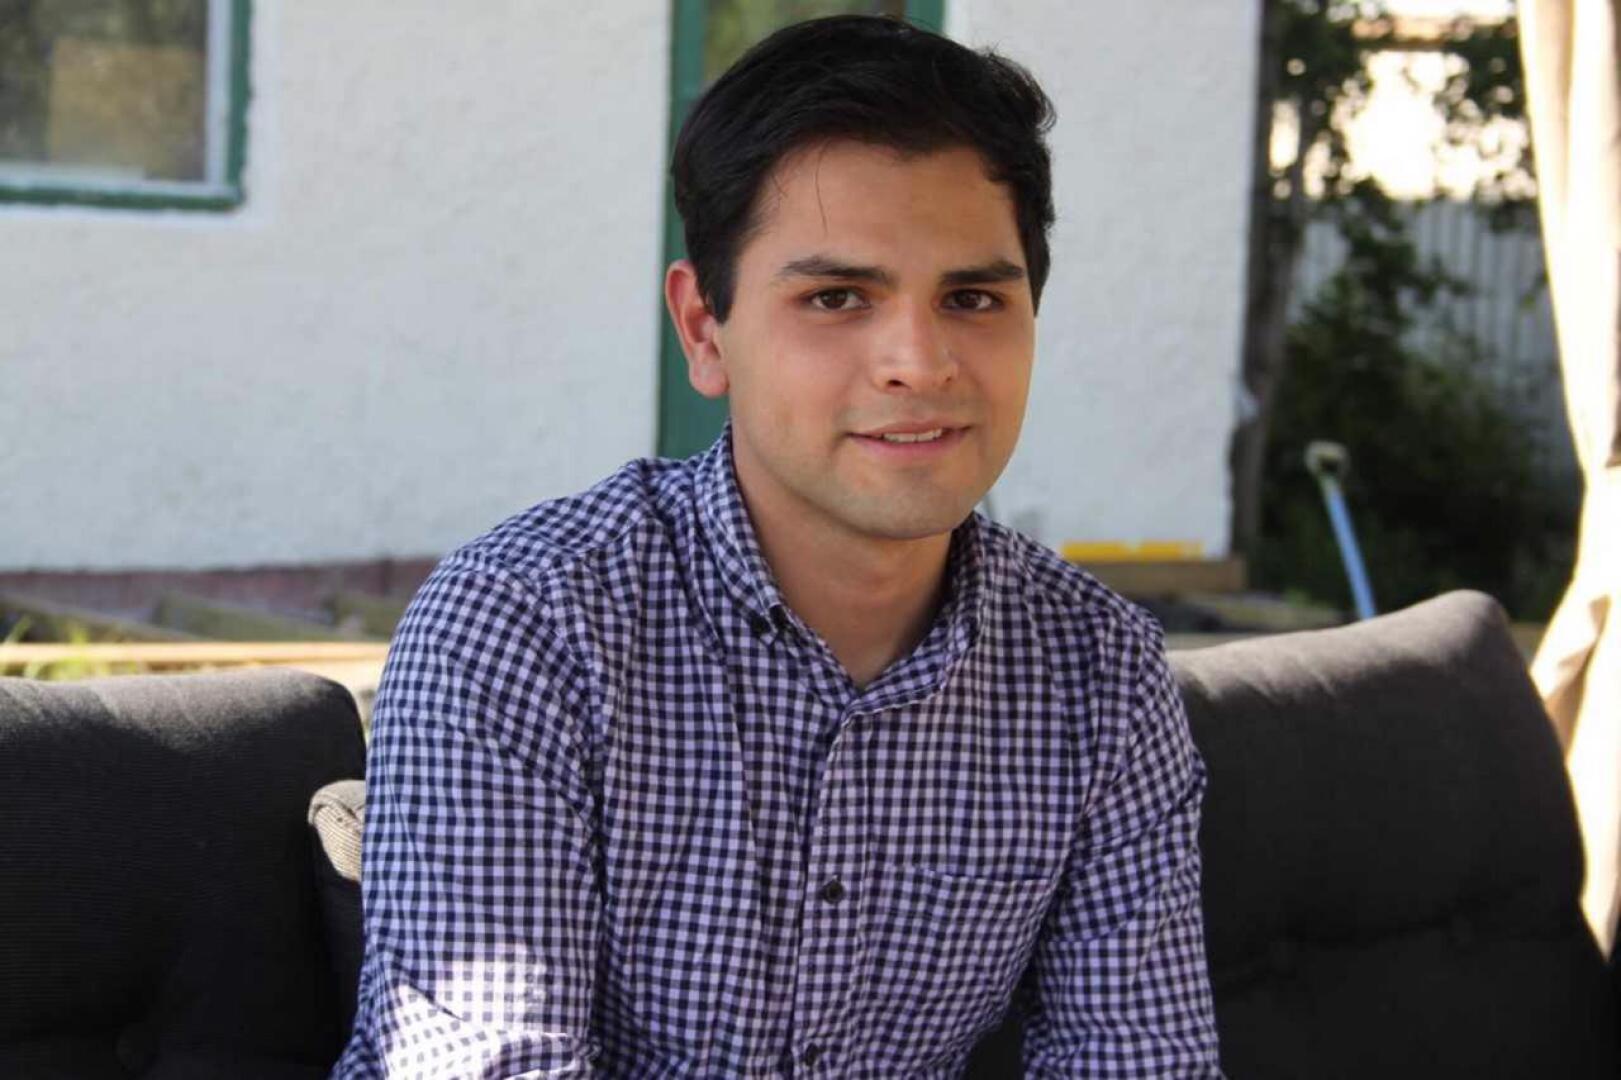 Meksikolainen Diego Villegas tuli Kokkolaan opiskelemaan Centria-ammattikorkeakouluun liikejohdon koulutusohjelmaan. Nyt hän työskentelee opintojen lisäksi Luodossa.